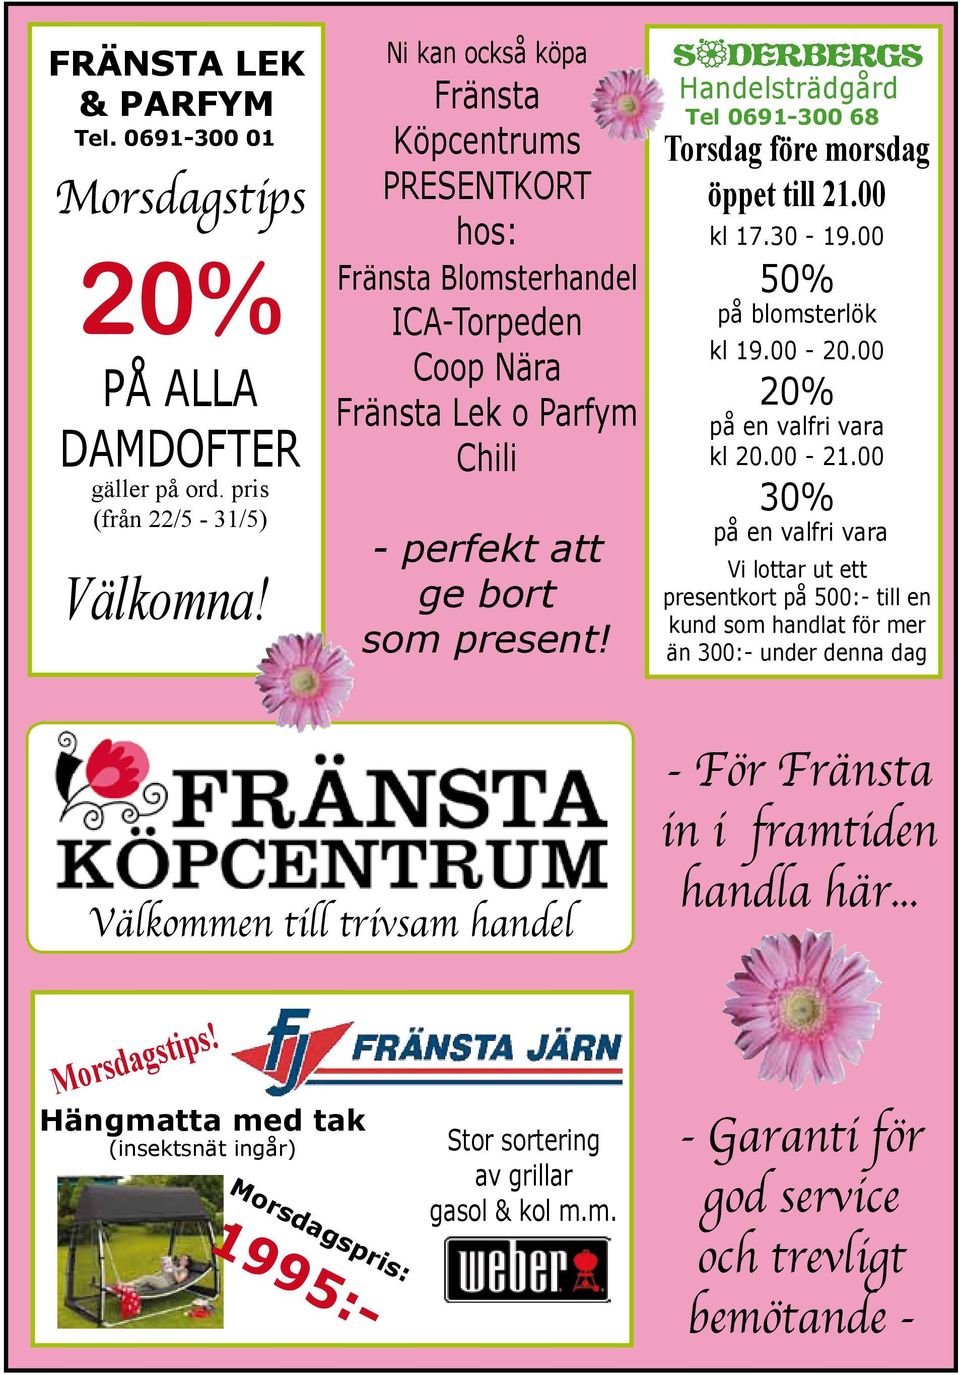 Handelsträdgård Tel 0691-300 68 Torsdag före morsdag öppet till 21.00 kl 17.30-19.00 50% på blomsterlök kl 19.00-20.00 20% på en valfri vara kl 20.00-21.